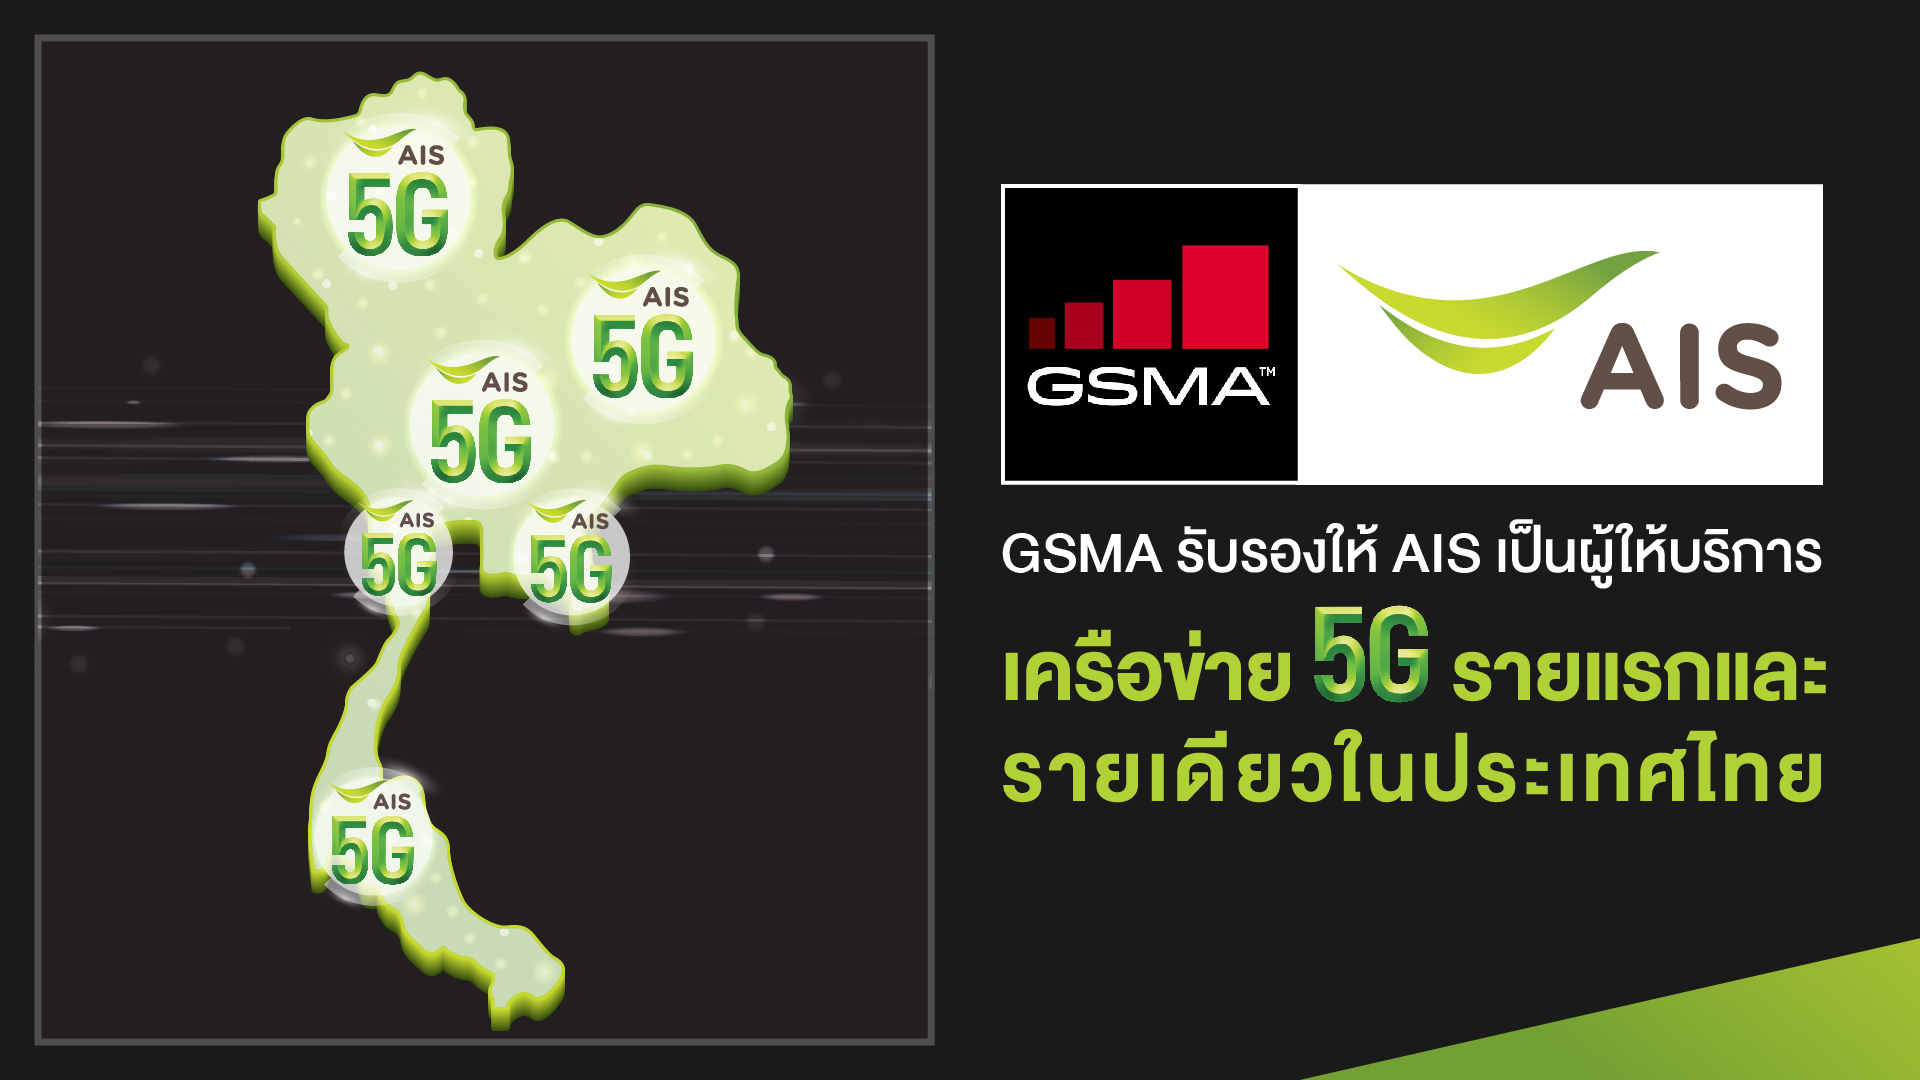 GSMA ประกาศรับรอง AIS เป็นผู้ให้บริการเครือข่าย 5G รายแรกและรายเดียวในประเทศไทย ปักหมุดไทย เป็น ประเทศแรกที่ให้บริการ 5G